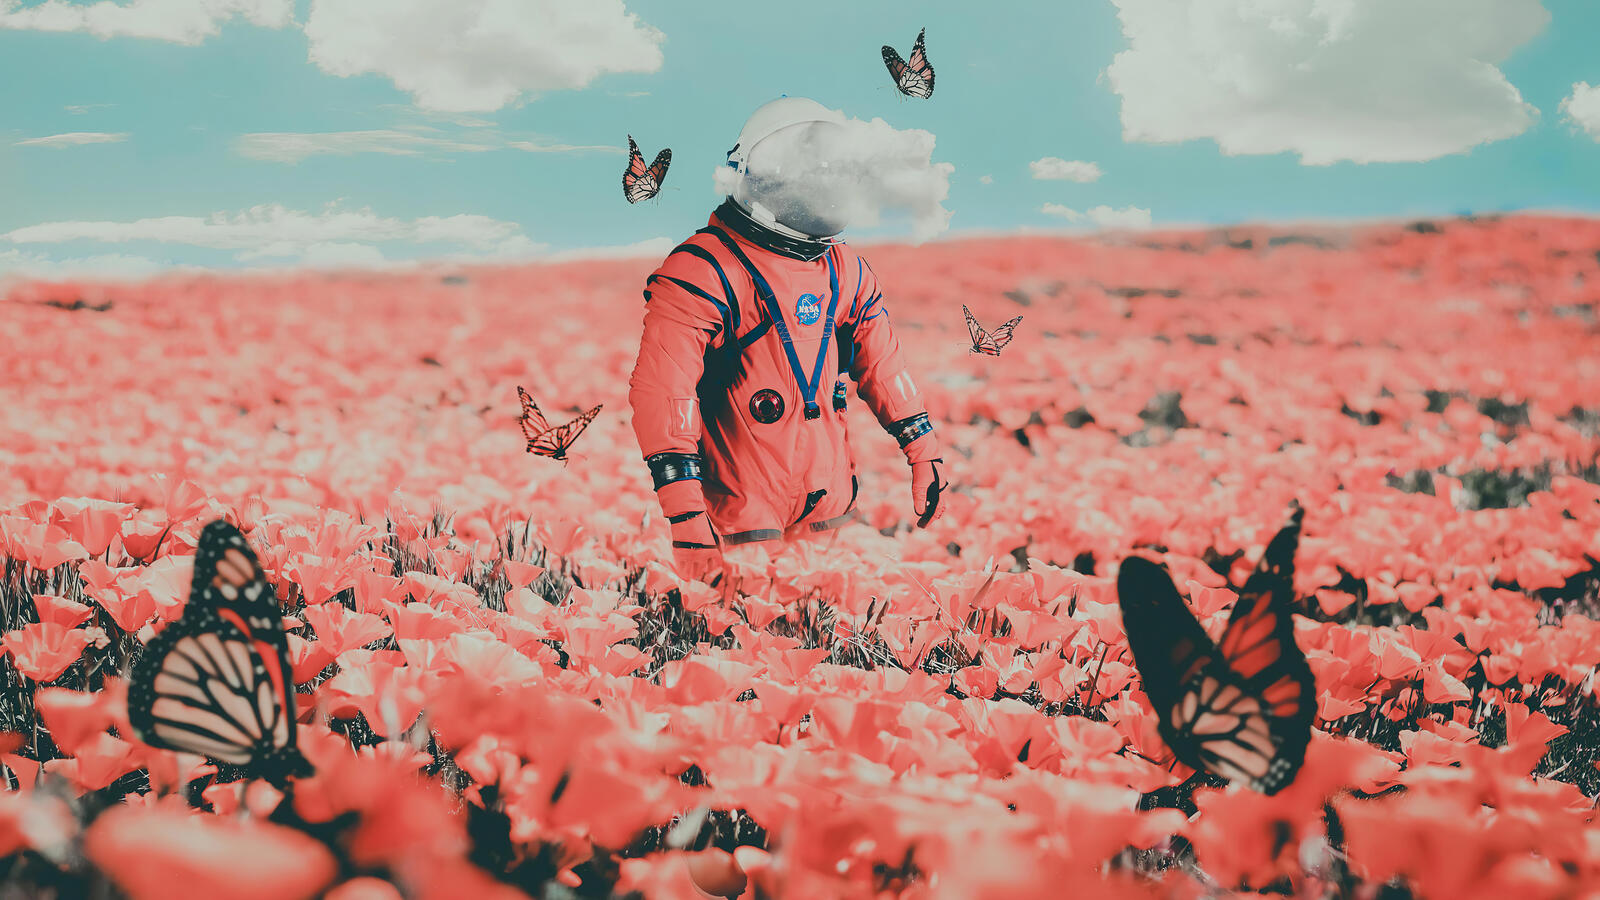 Бесплатное фото Космонавт на поле с розовыми цветами и бабочками